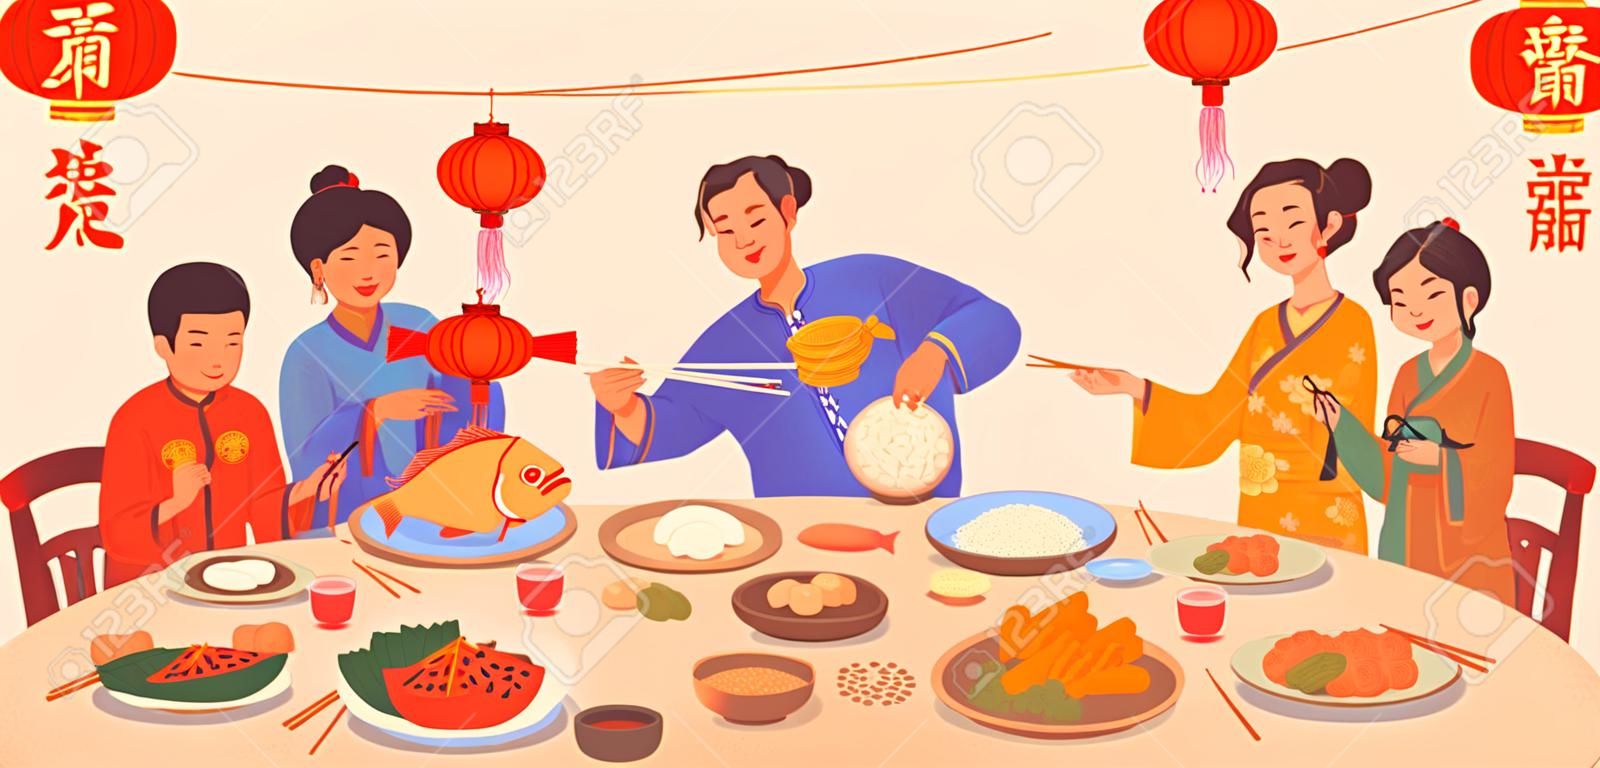 Tłumaczenie tekstu na chiński nowy rok, uroczysta kolacja z jedzeniem na talerzach i ręce ludzi trzymających pałeczki, dekoracja czerwonych latarni. tradycyjne dania kuchni chińskiej, ryby i ryż, pierogi, warzywa